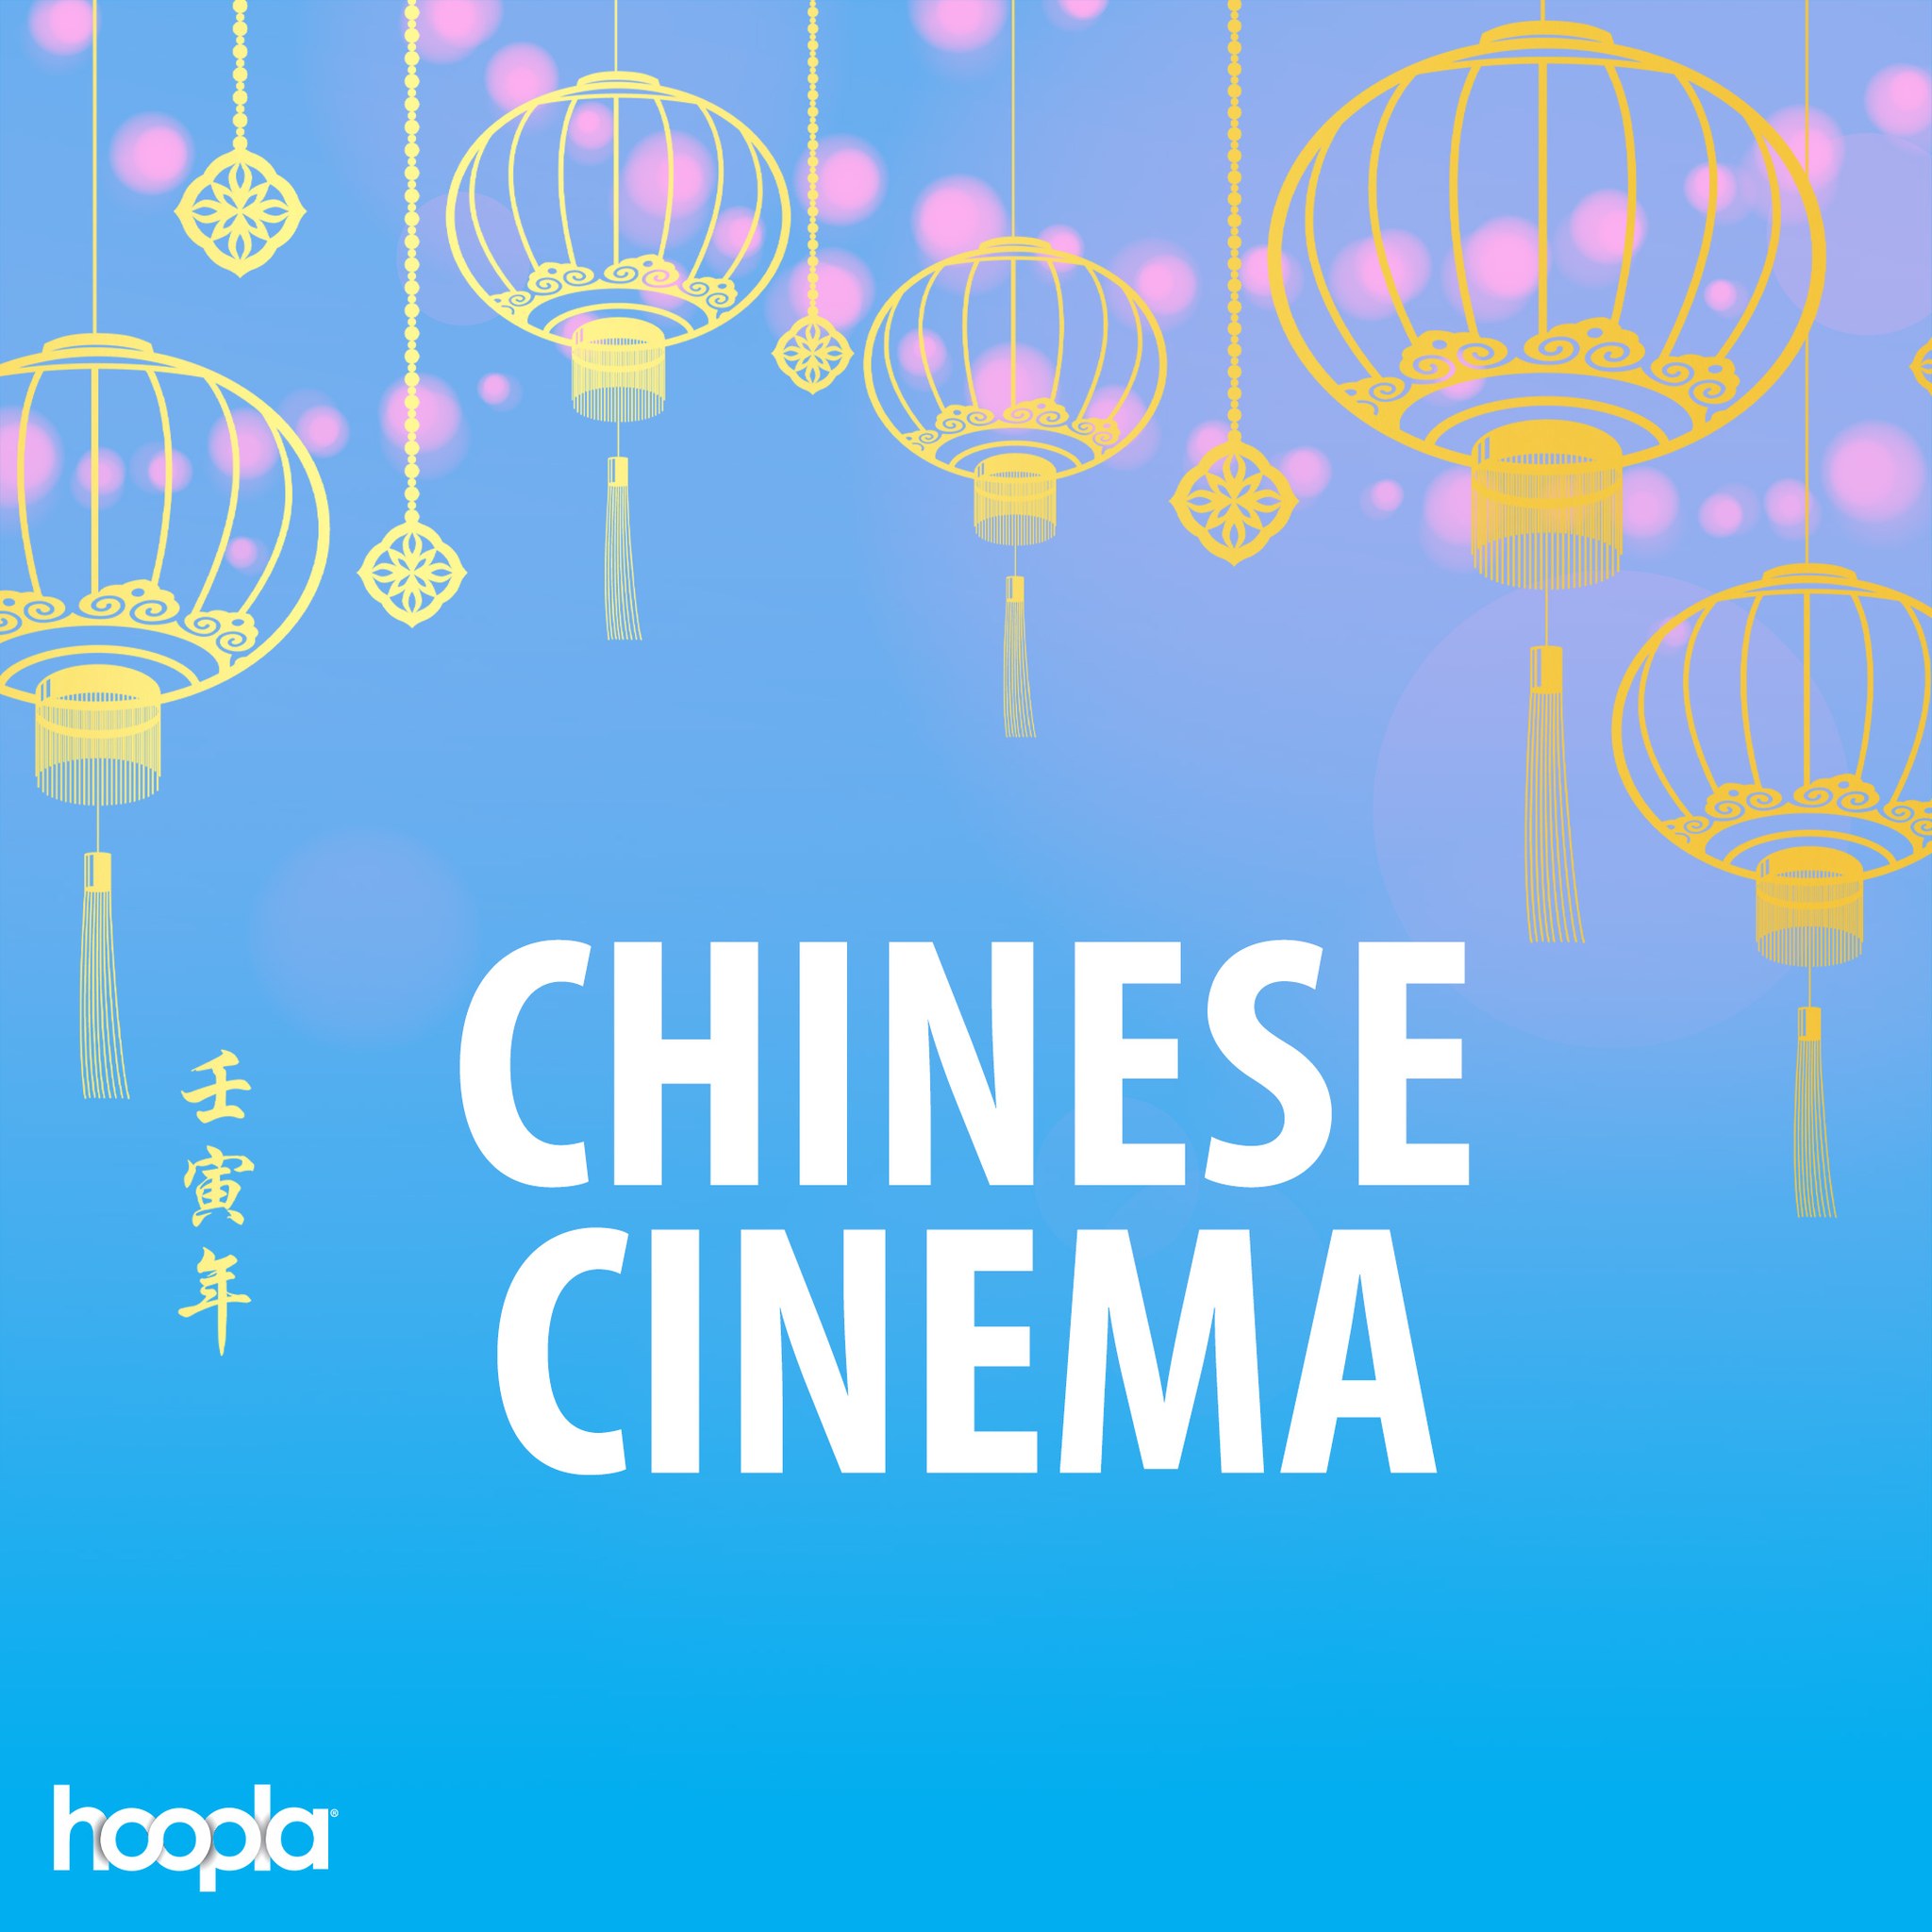 韦伯斯特教区图书馆推出 Hoopla Digital 的中国电影收藏 |